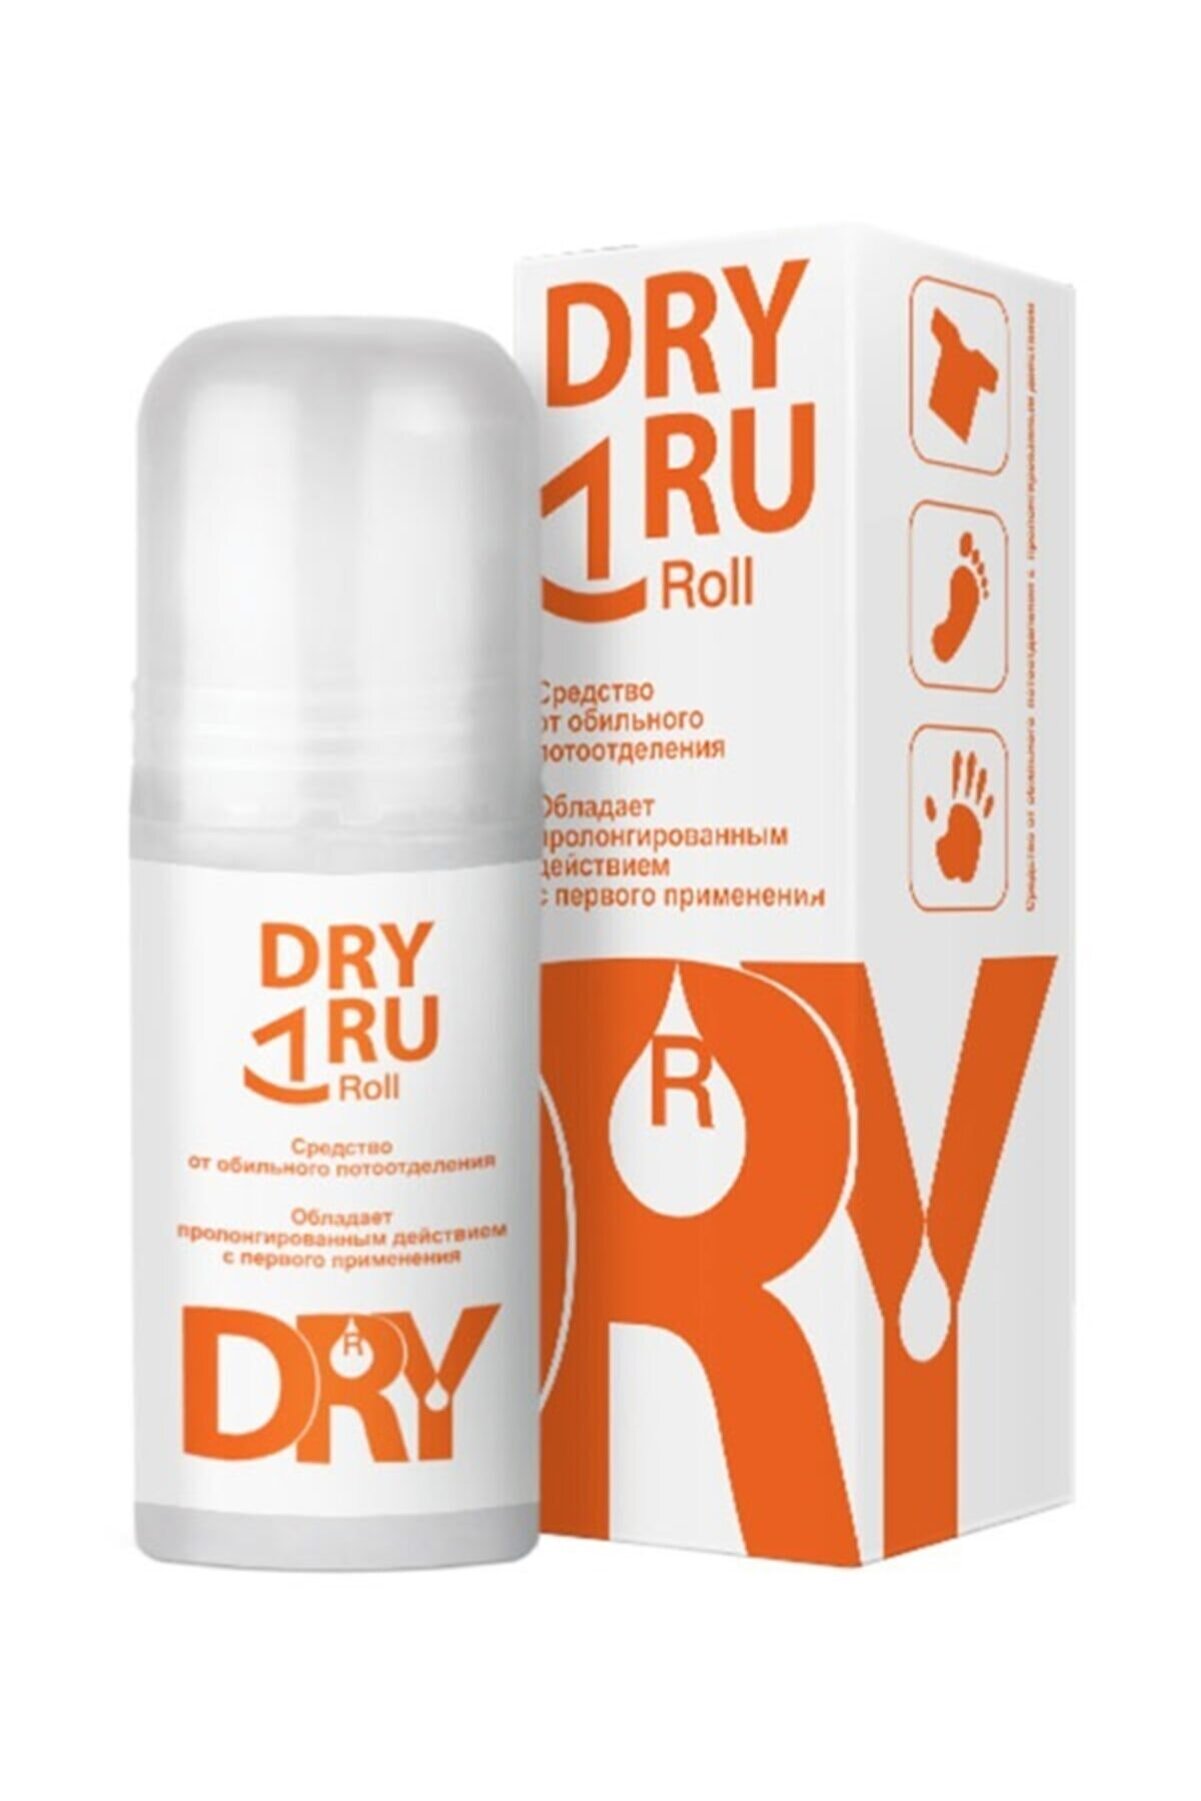 DRYDRY Dry Ru Rol-on 50 Ml